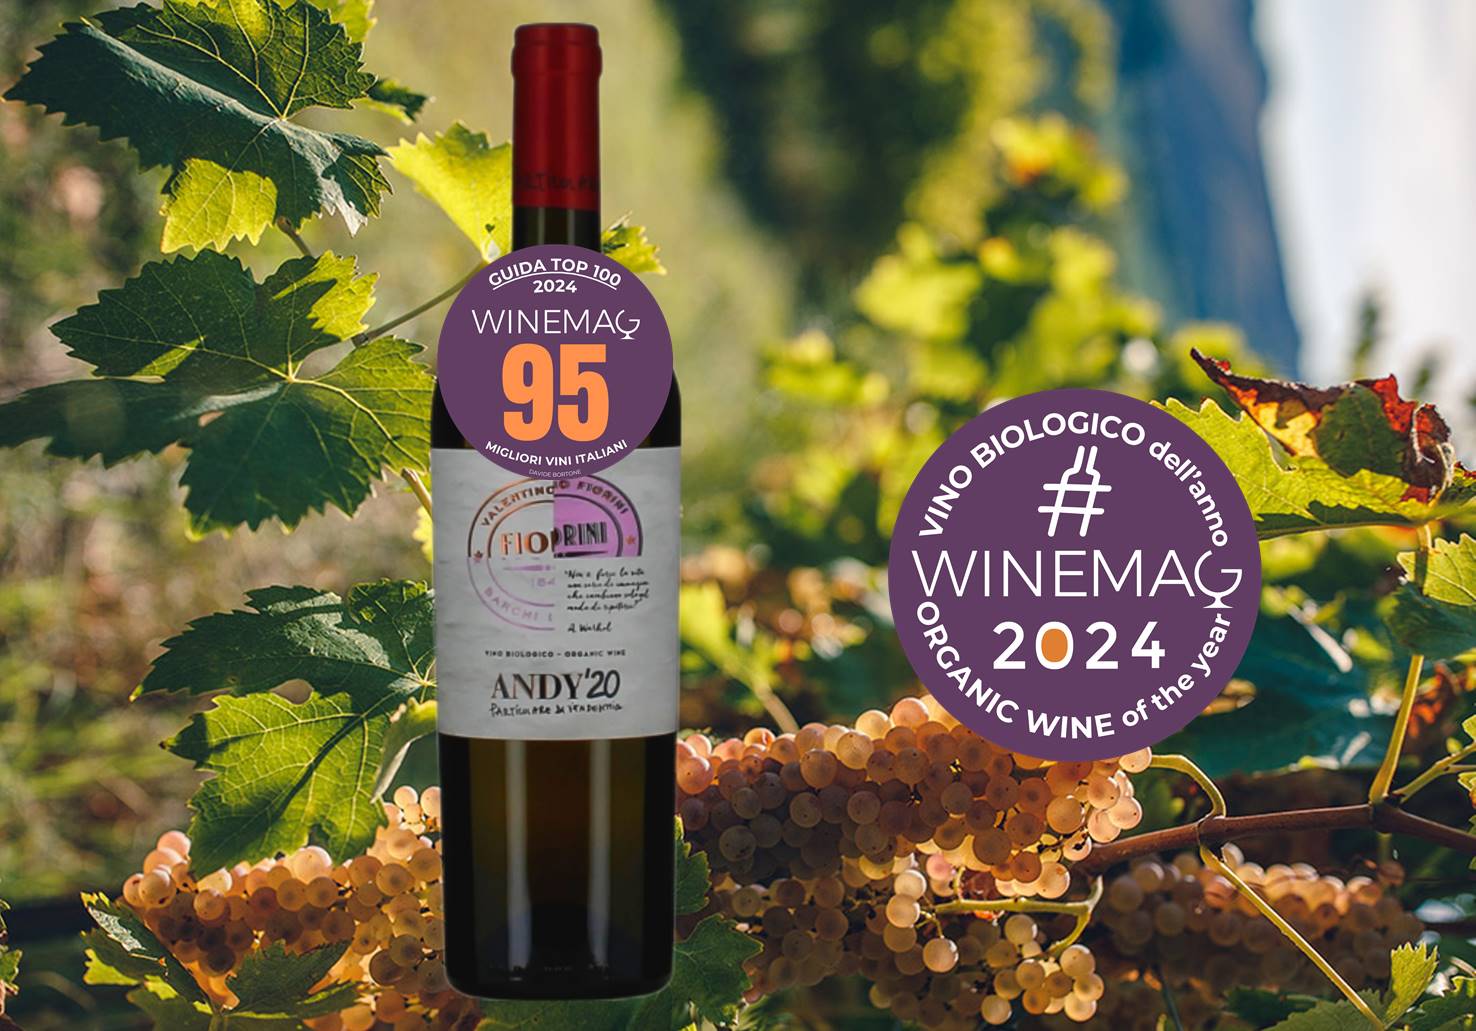 Miglior vino biologico italiano 2024 Bianchello del Metauro Doc Superiore 2020 Andy'20 Valentino Fiorini guida top 100 winemag davide bortone